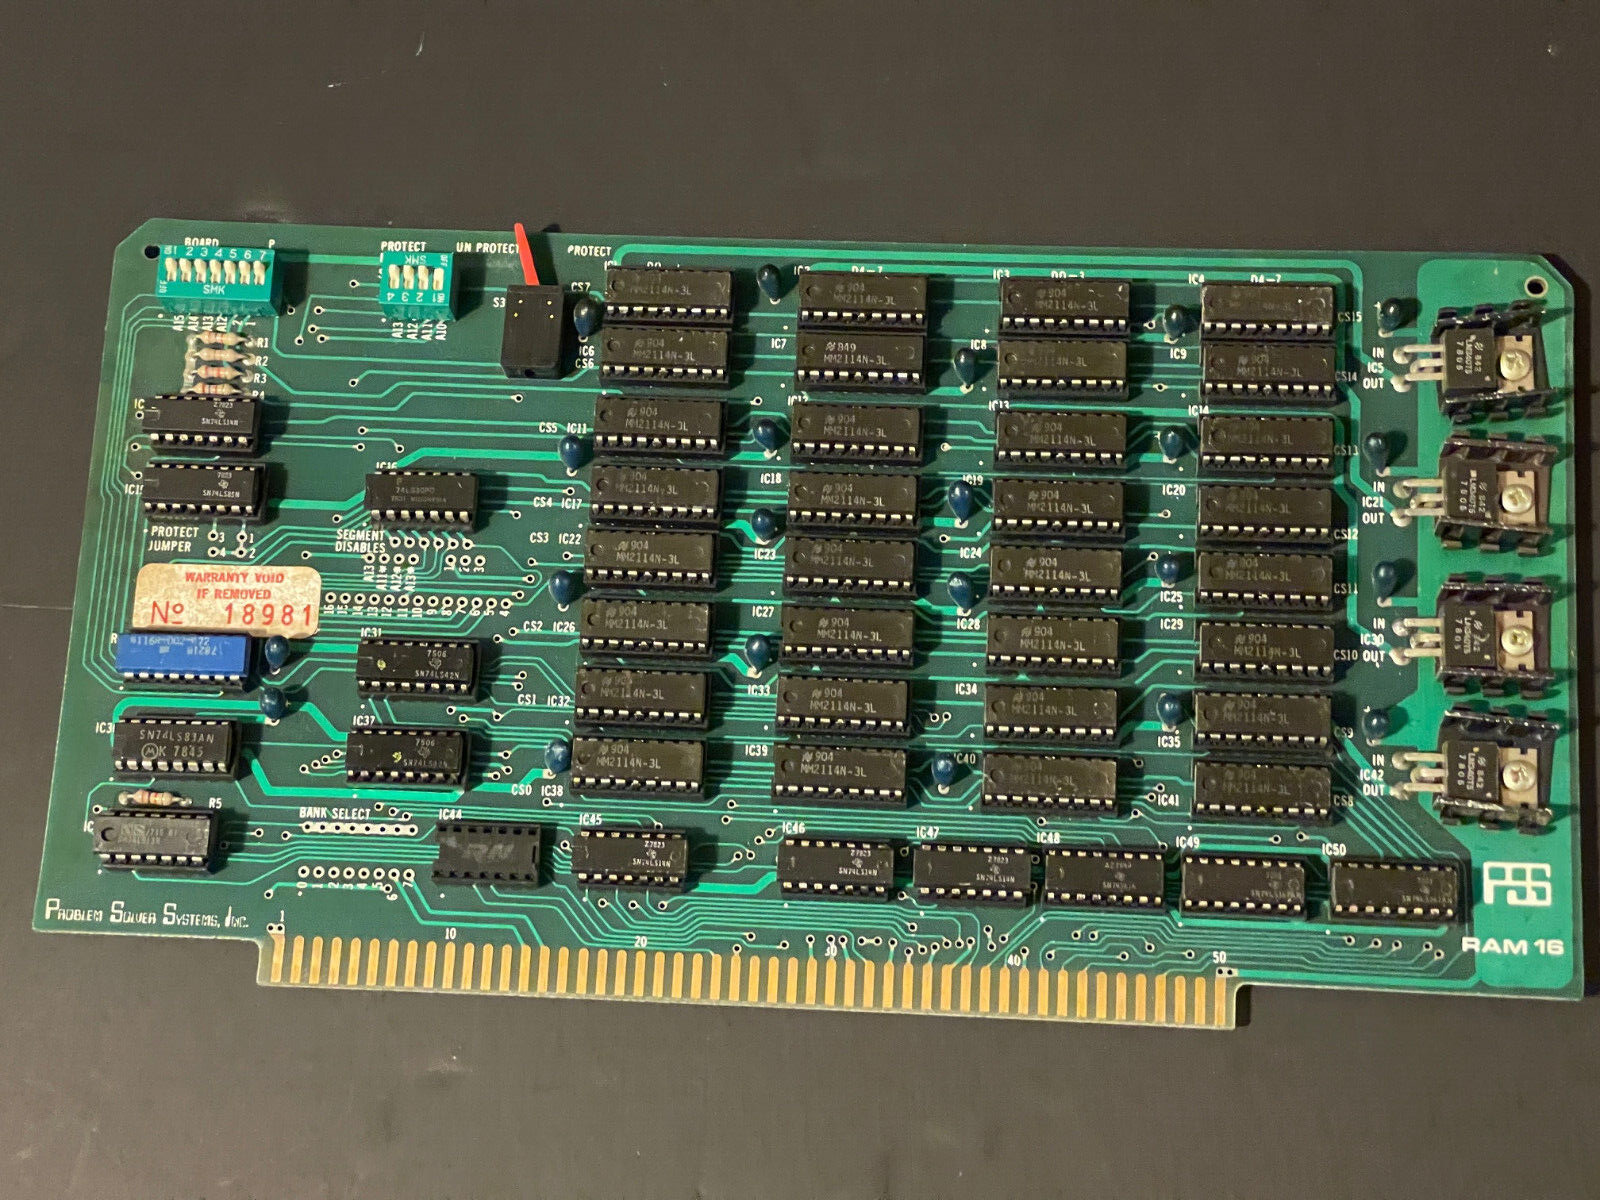 PSS RAM 16 S-100 MEMORY BOARD (32) SOCKETED MM2114N-3L SRAM VINTAGE